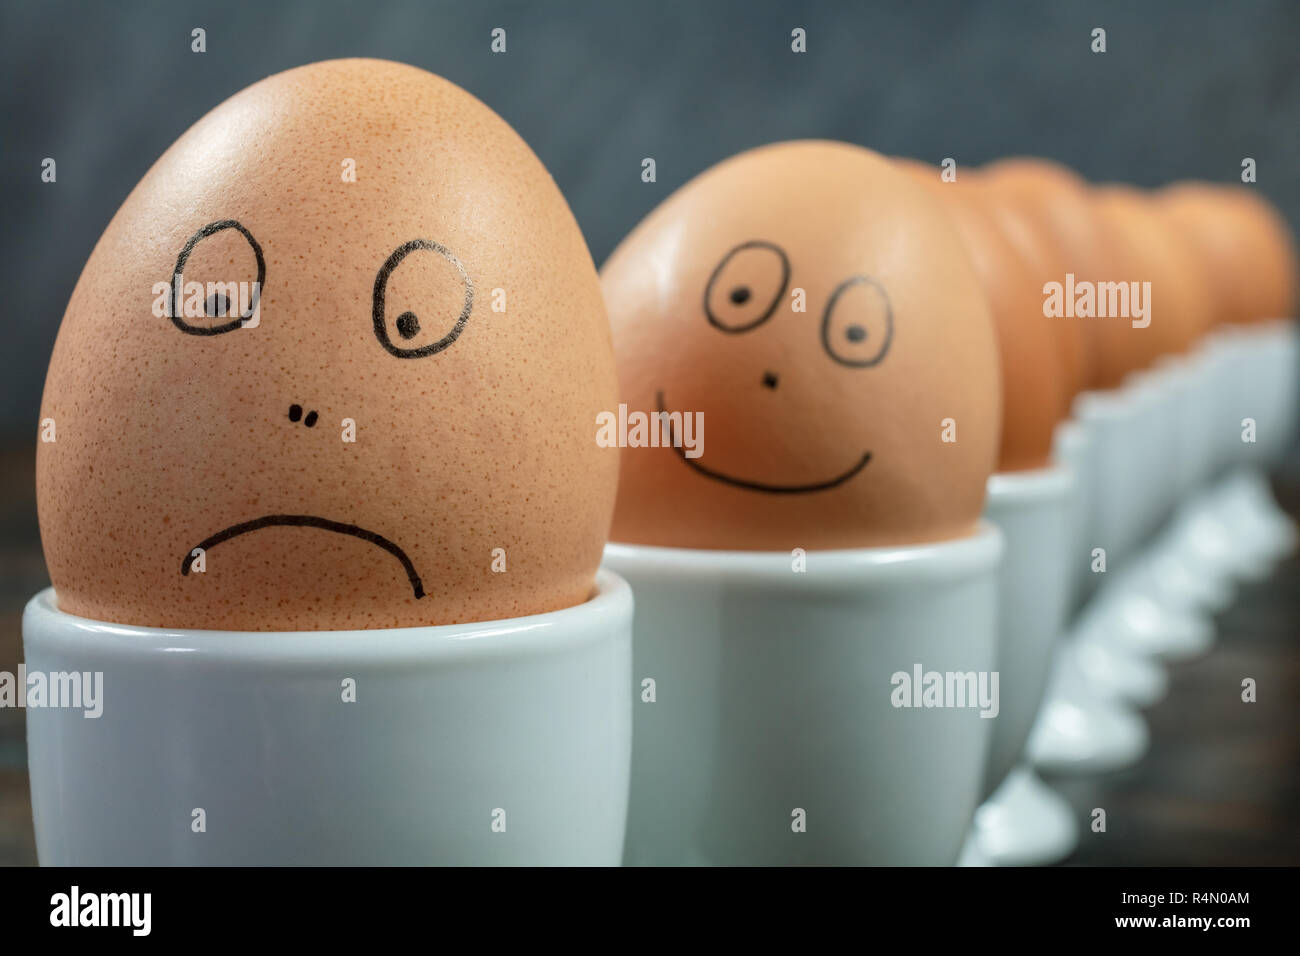 Emotionen Konzept Warteschlange oder bis von 10 gekochte Eier in Weiß  Eierbecher mit gezogenen glückliche und traurige Gesichter auf einem  Holztisch Stockfotografie - Alamy